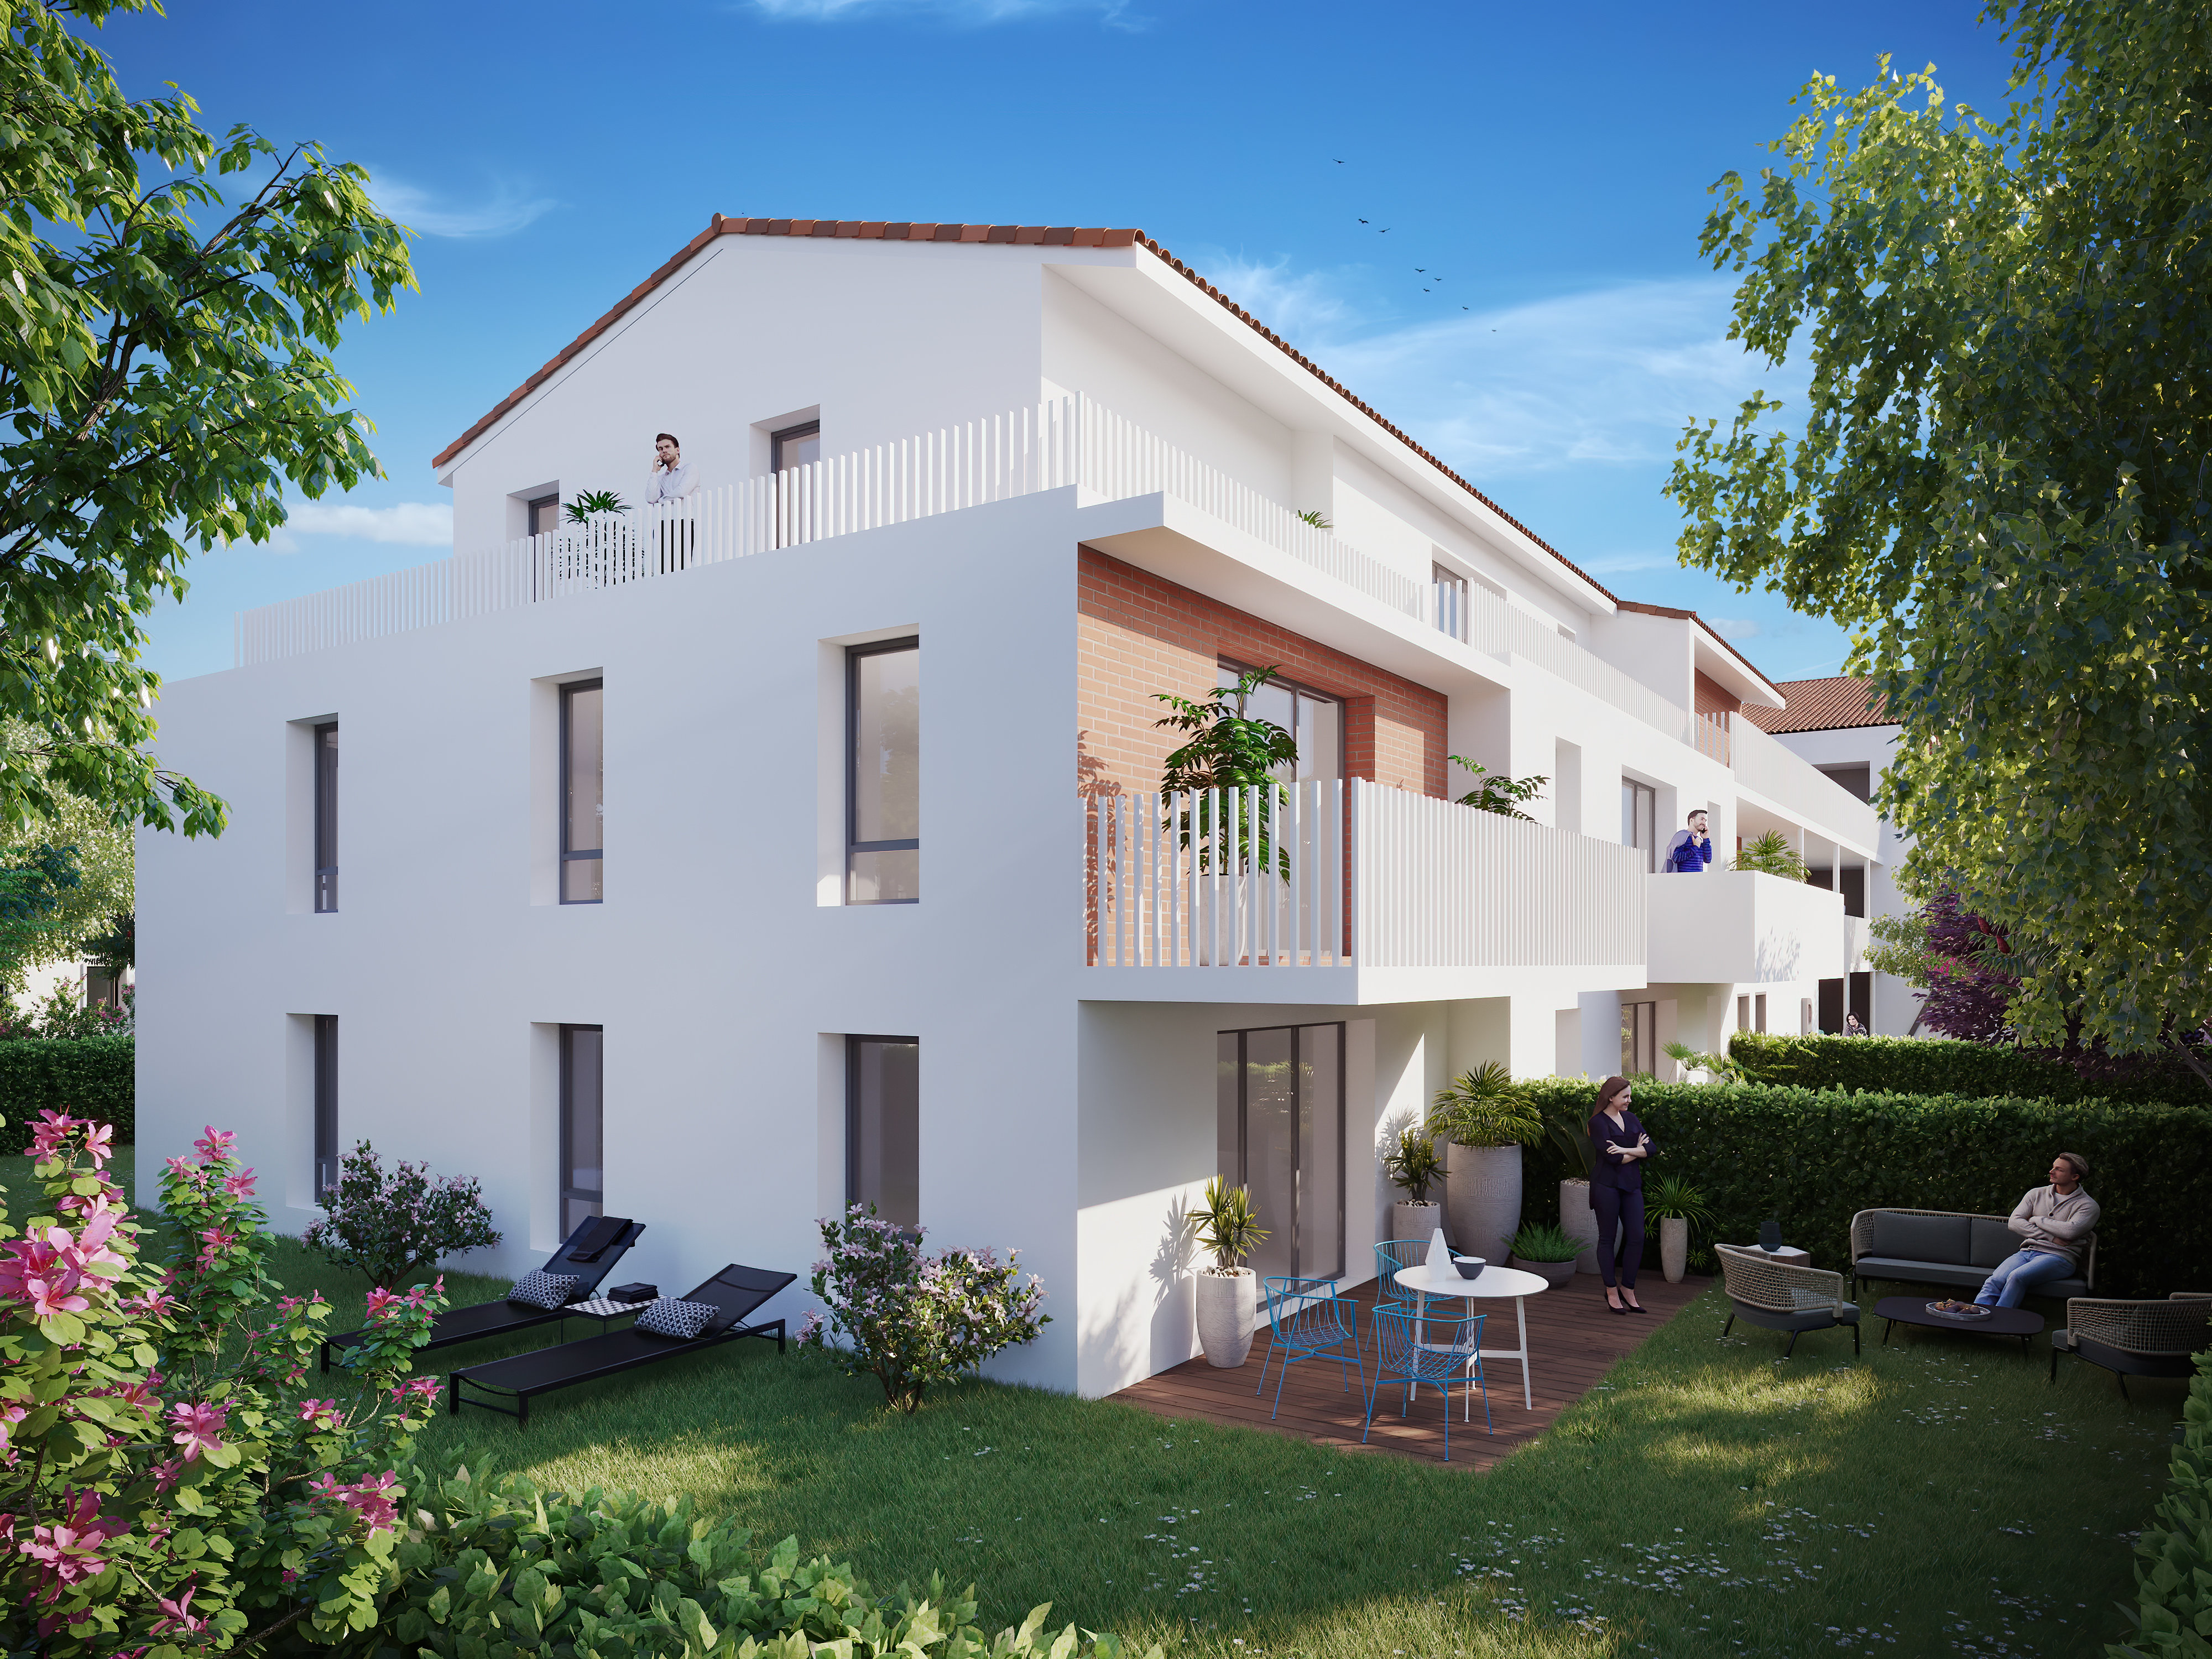 Appartements neufs - Toulouse Croix Daurade (3 à 4 pièces, 62 m² min)